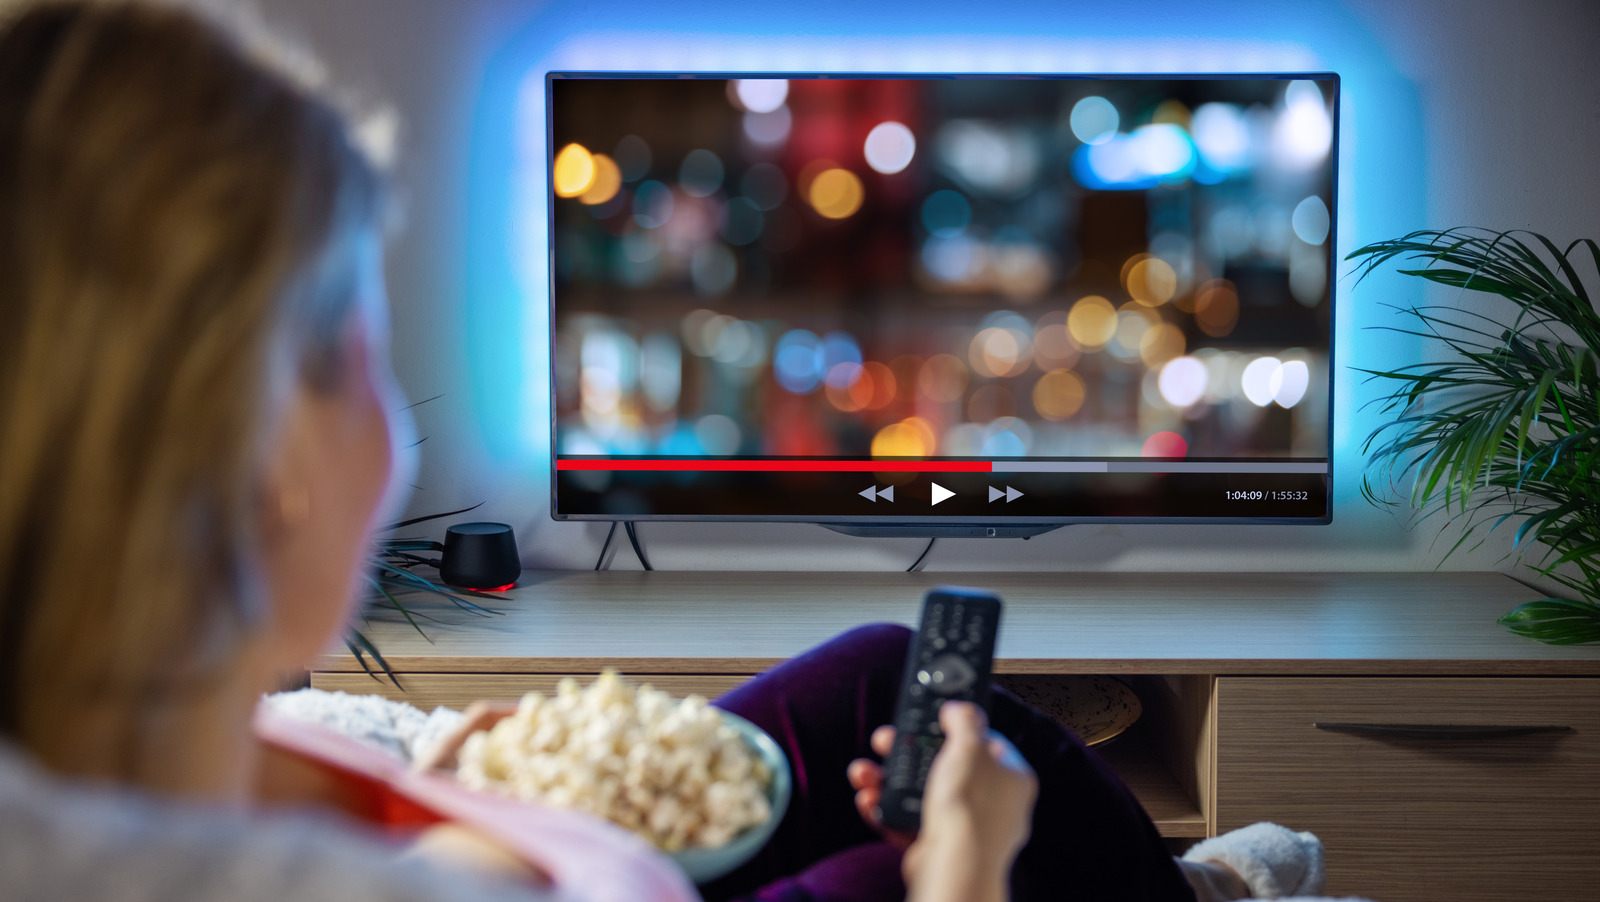 آیا نرخ تازه سازی تلویزیون بر کیفیت تصویر تأثیر می گذارد؟